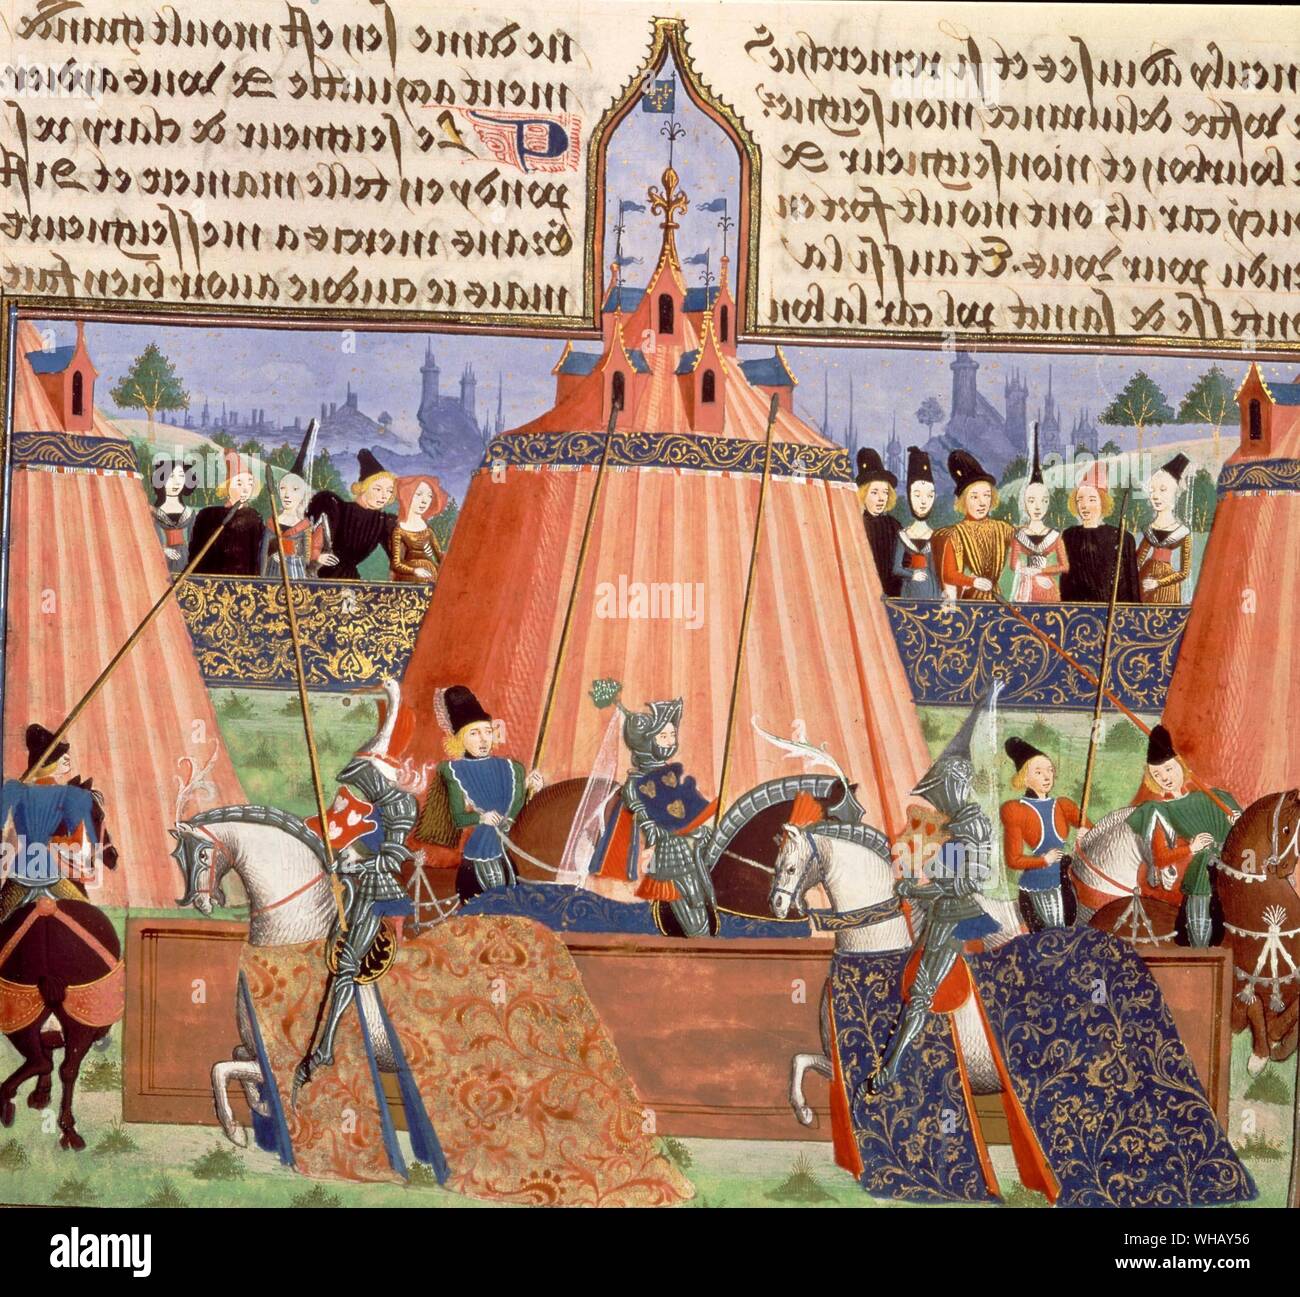 Deux chevaliers en armure à cheval avec lances. joutes. Illustration de l'article Chroniques de Froissart Harley (Chroniques de Froissart Harley), produit à Bruges.. Froissart's Chronicle a été rédigé en français par Jean Froissart. Il porte sur les années 1322 jusqu'en 1400 et décrit l'approche de et le progrès de la première moitié de la guerre de Cent Ans. Jean Froissart (1337-1405) a été l'un des plus importants des chroniqueurs de la France médiévale. Pendant des siècles, les Chroniques de Froissart ont été reconnus comme le principal responsable de l'expression de la renaissance chevaleresque de quatorzième siècle en Angleterre Banque D'Images